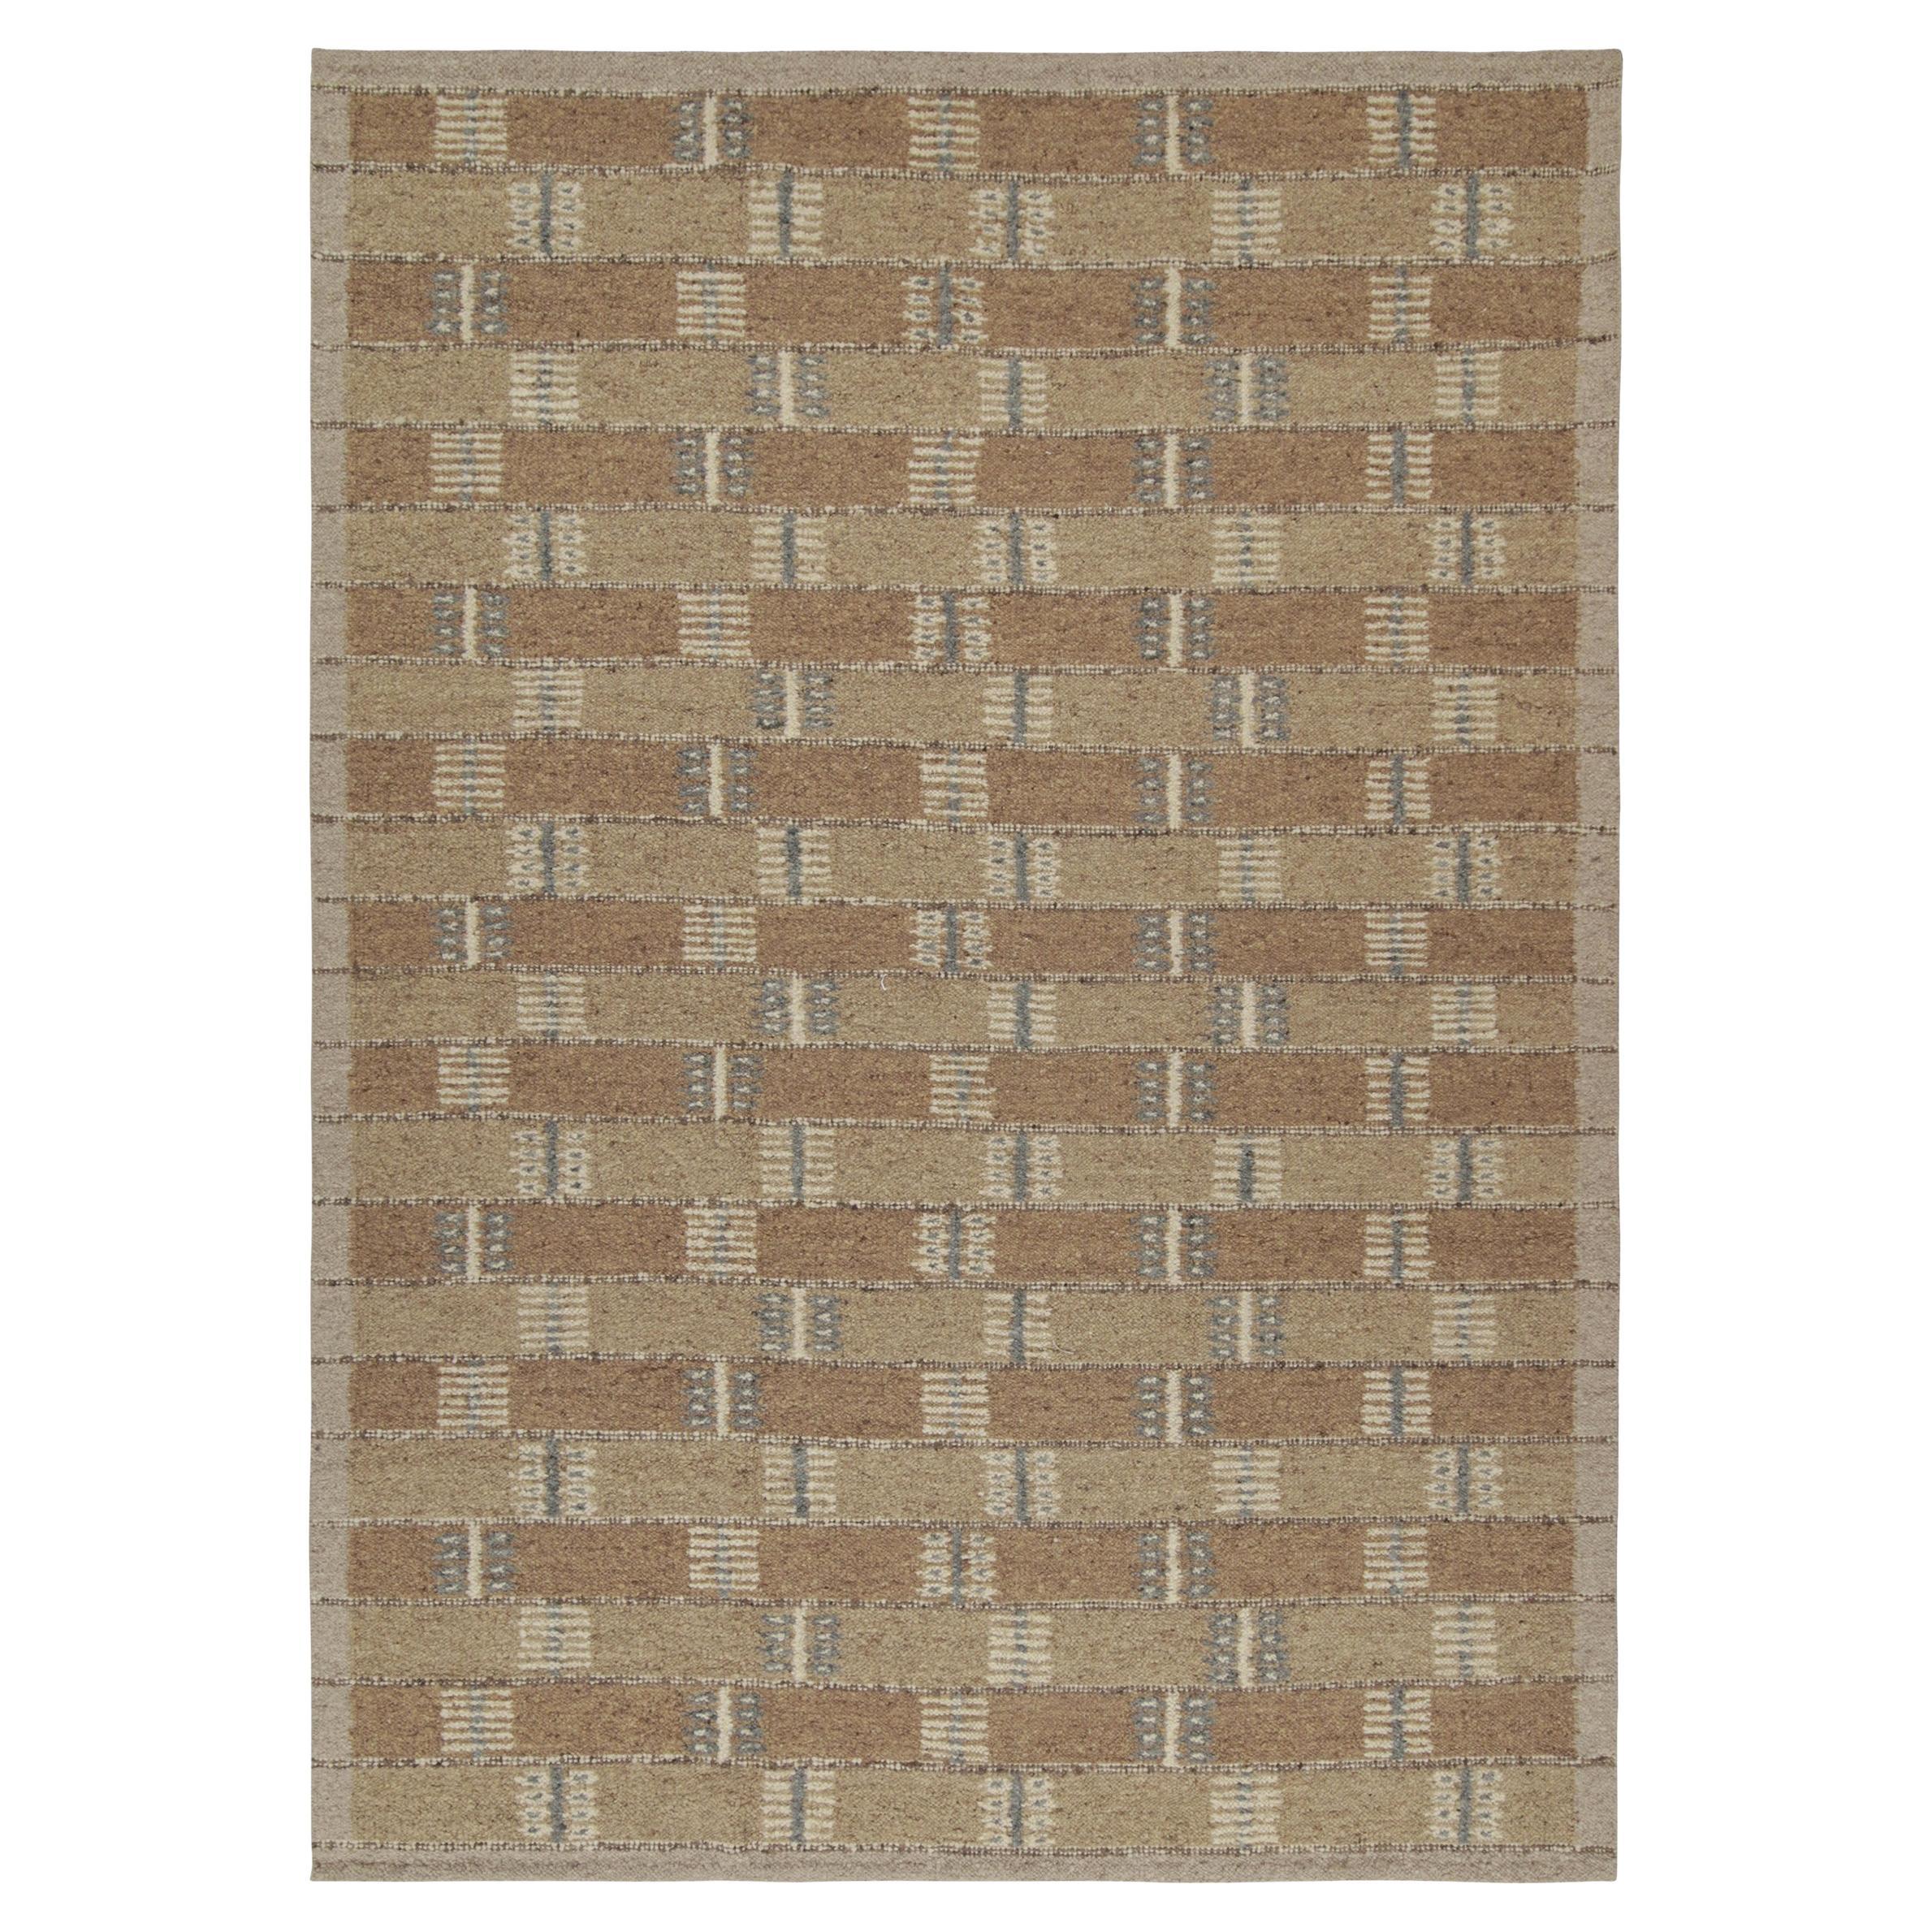 Skandinavischer Kilim-Teppich von Rug & Kilim mit beige-braunem, geometrischem Muster